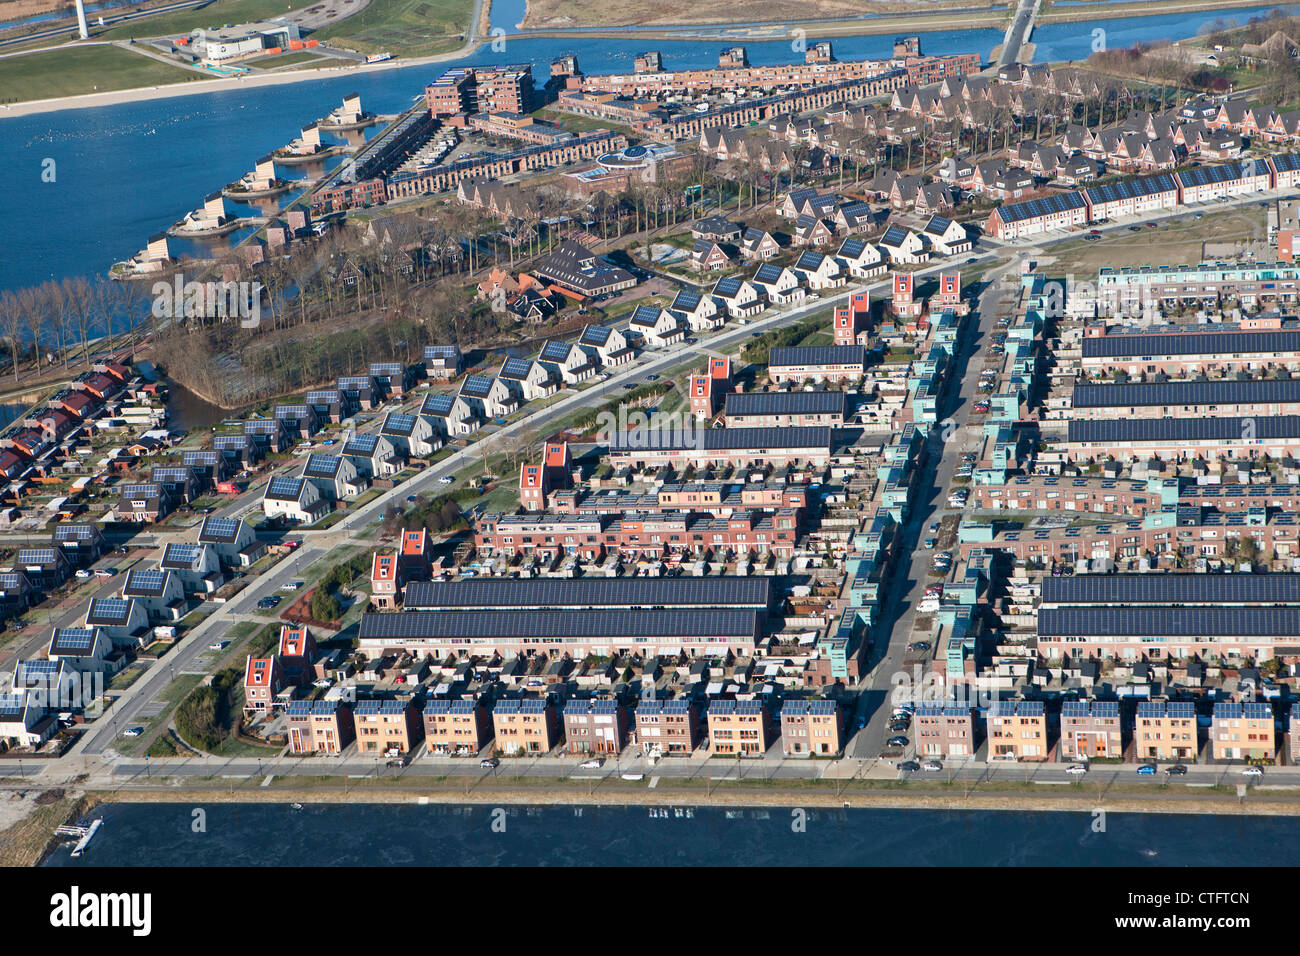 I Paesi Bassi, Heerhugowaard, antenna, quartiere chiamato la città del sole, Olandese: Stad van de Zon. Tutte le case con pannelli solari. Foto Stock